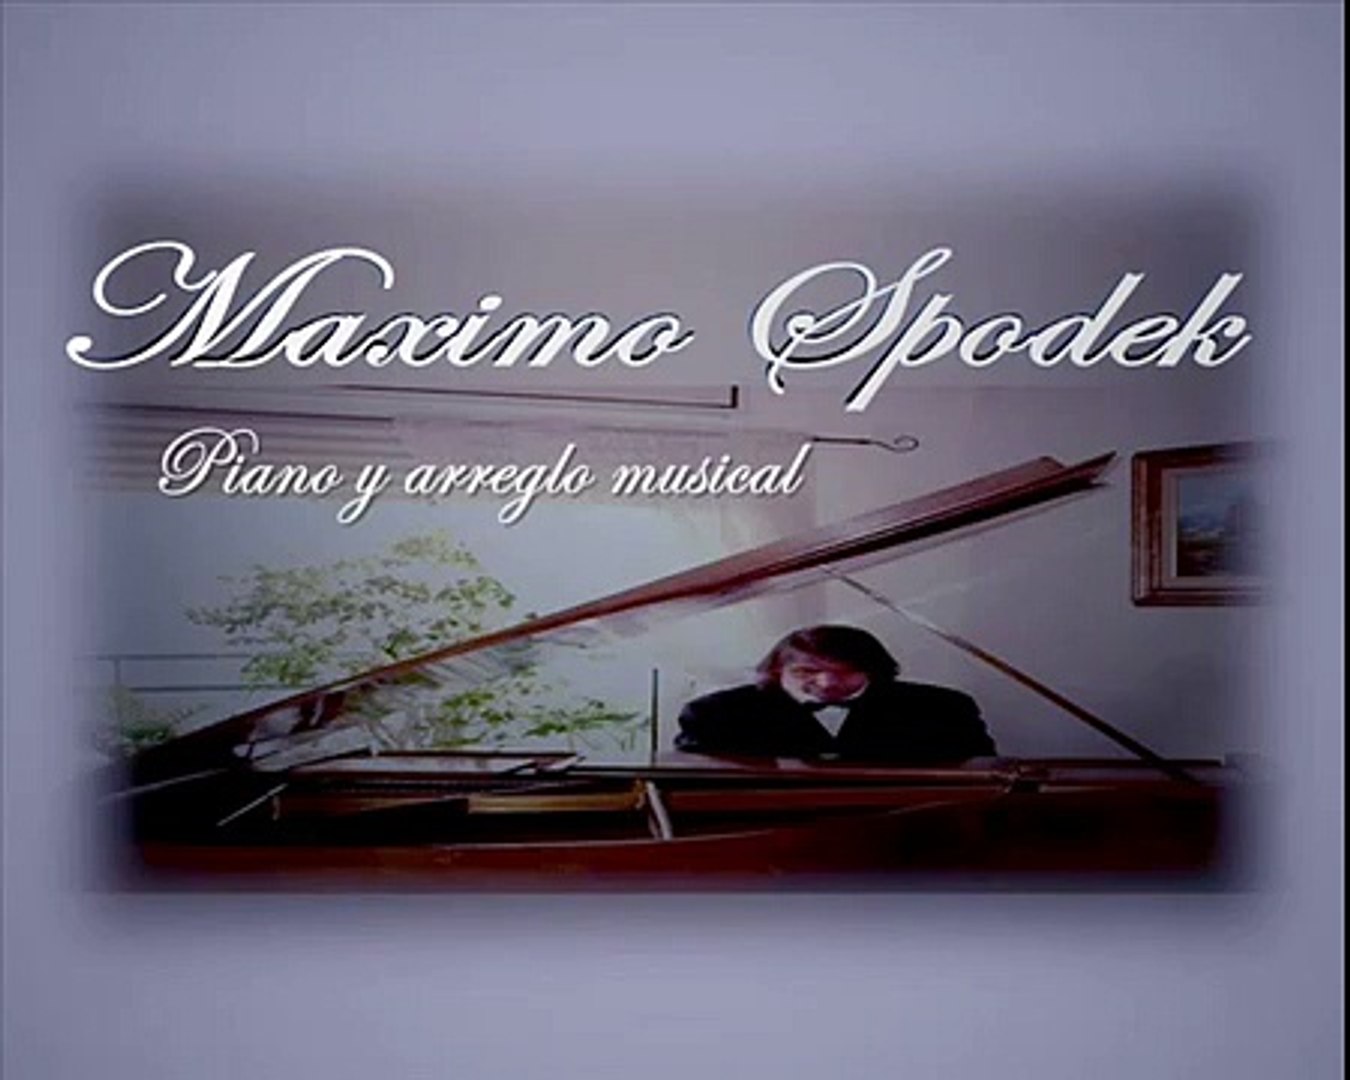 MAXIMO SPODEK, NOSTALGIA, MUSICA ROMANTICA DE FRANCIA, EN PIANO Y ARREGLO MUSICAL  INSTRUMENTAL - video Dailymotion